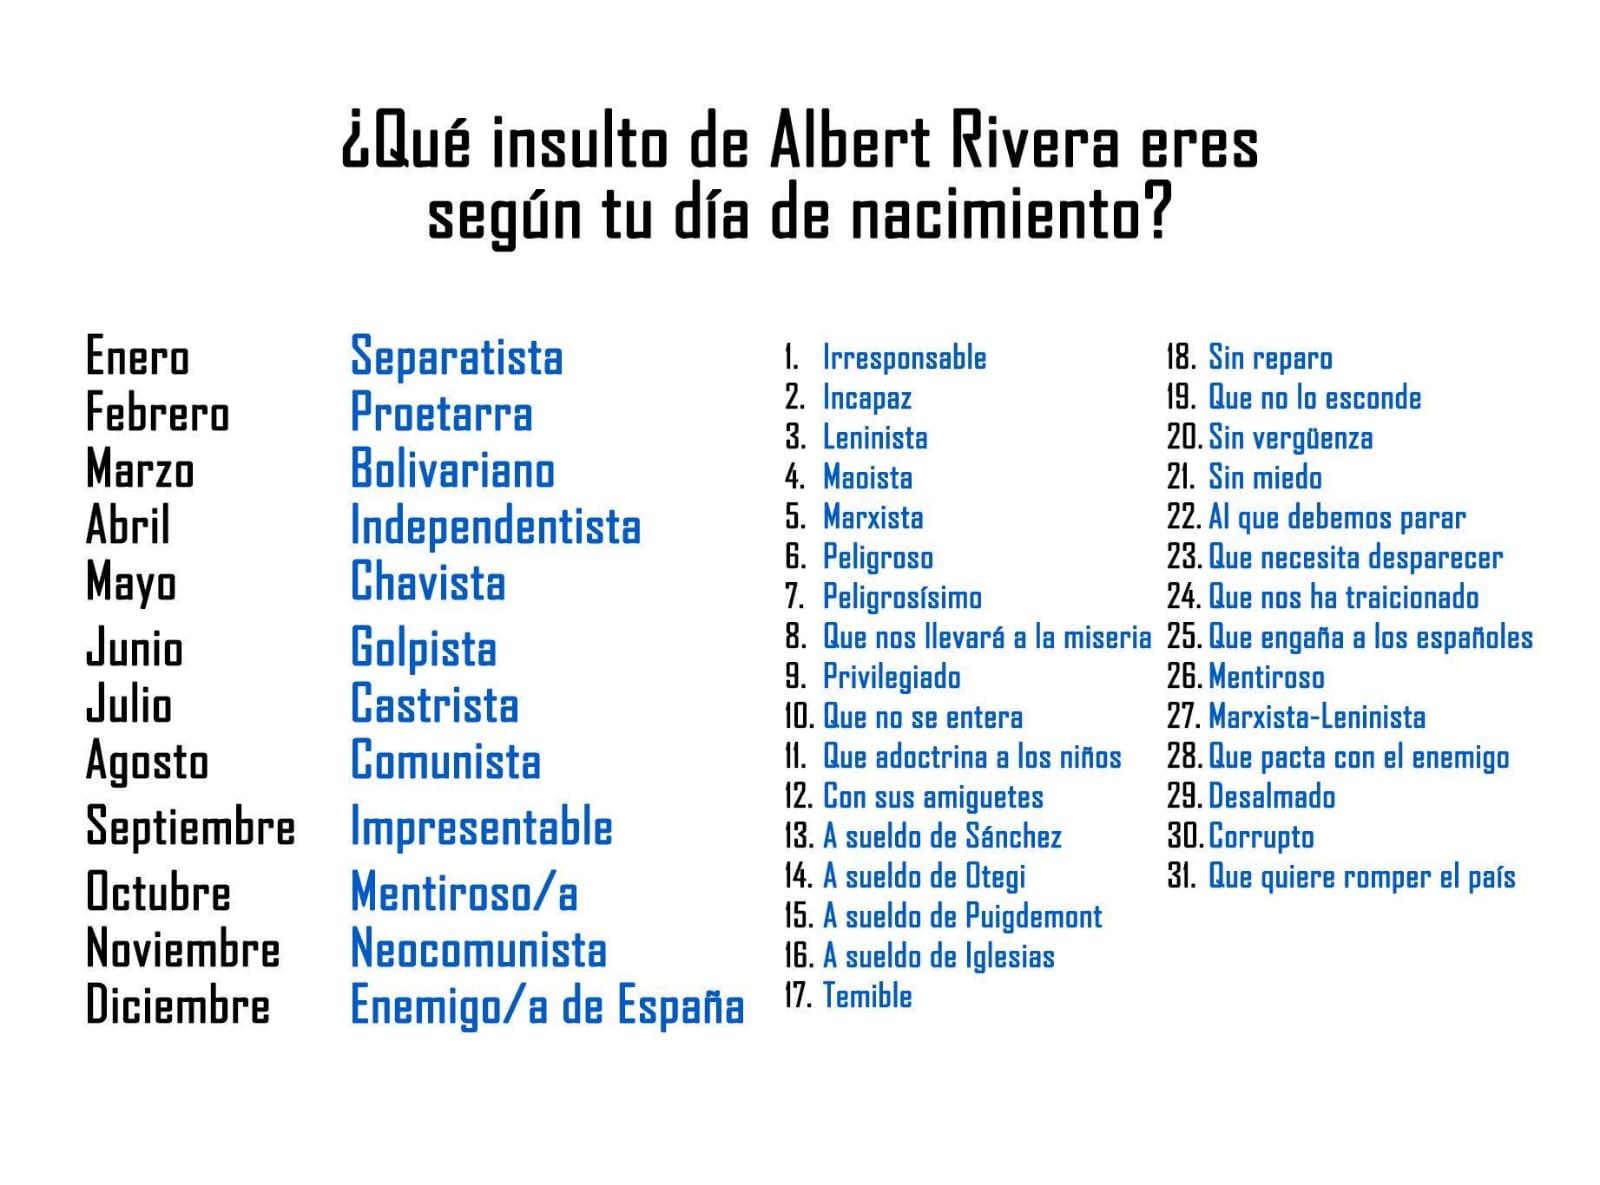 Busca tu propio insulto de Albert Rivera